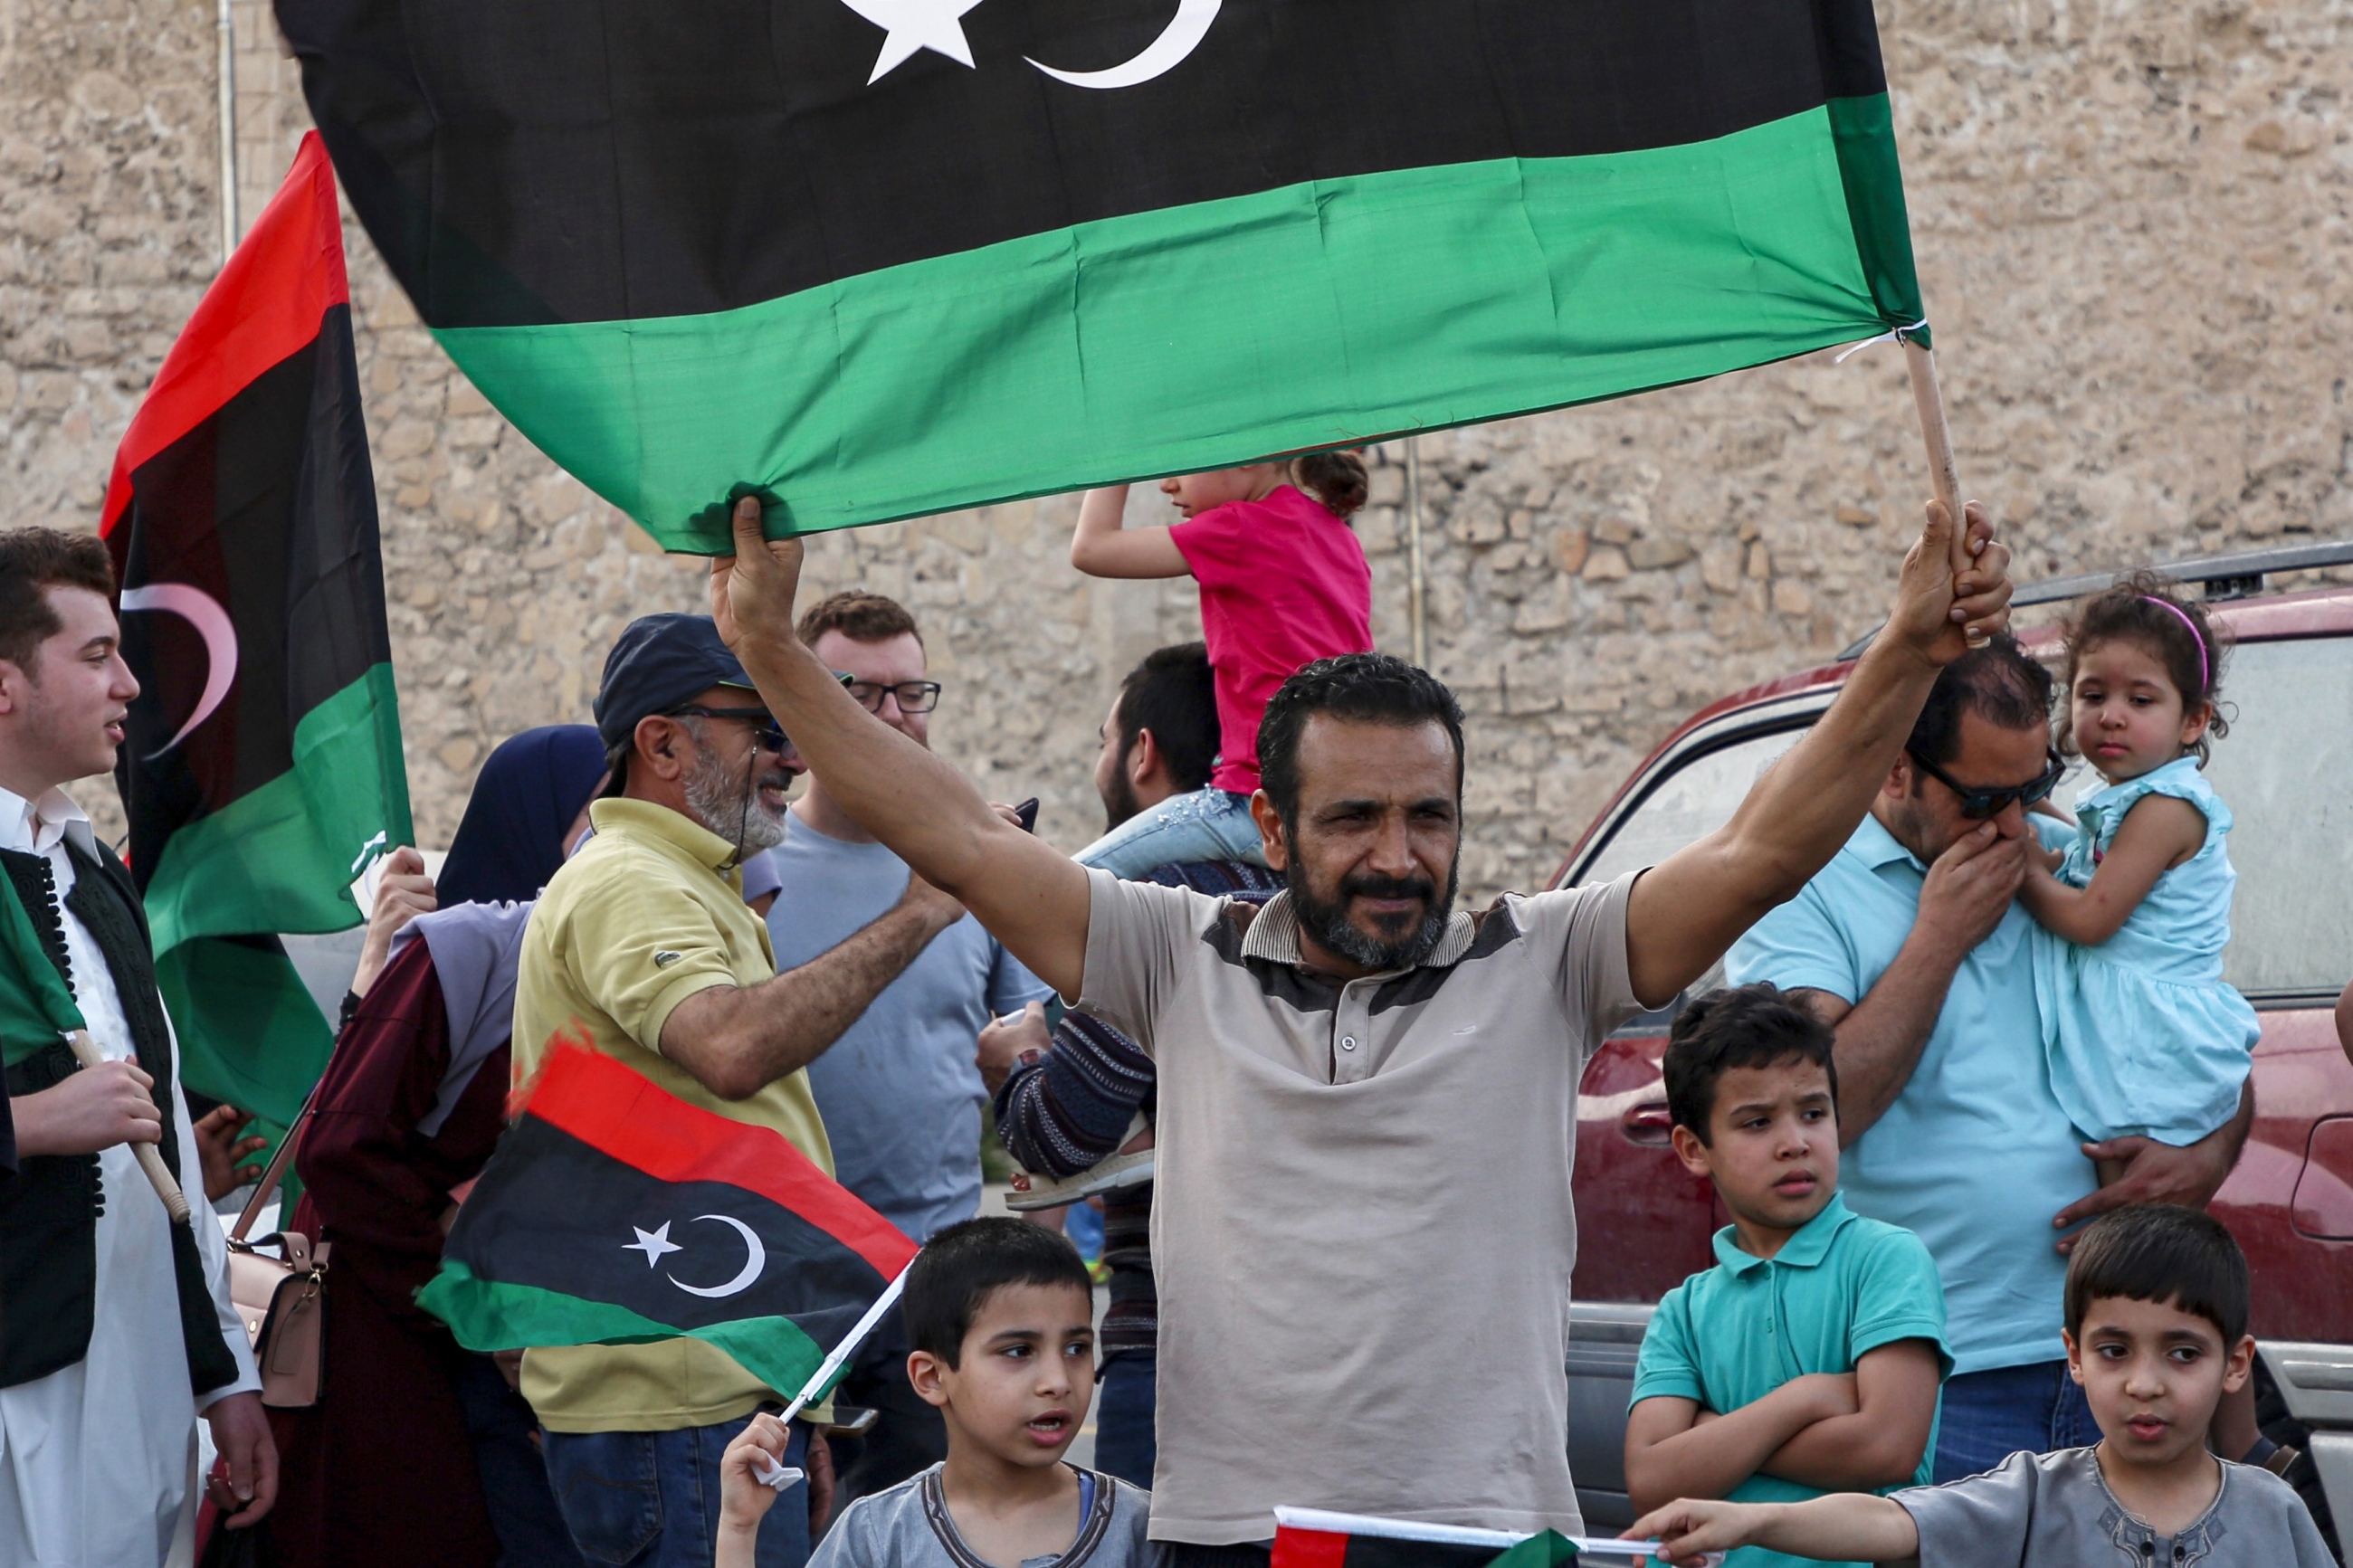 Un homme brandit un drapeau national libyen au cours de célébrations dans la capitale Tripoli, après que le Gouvernement d’union nationale (GNA) reconnu par l’ONU a déclaré avoir repris le contrôle total de la capitale le 4 juin (AFP)